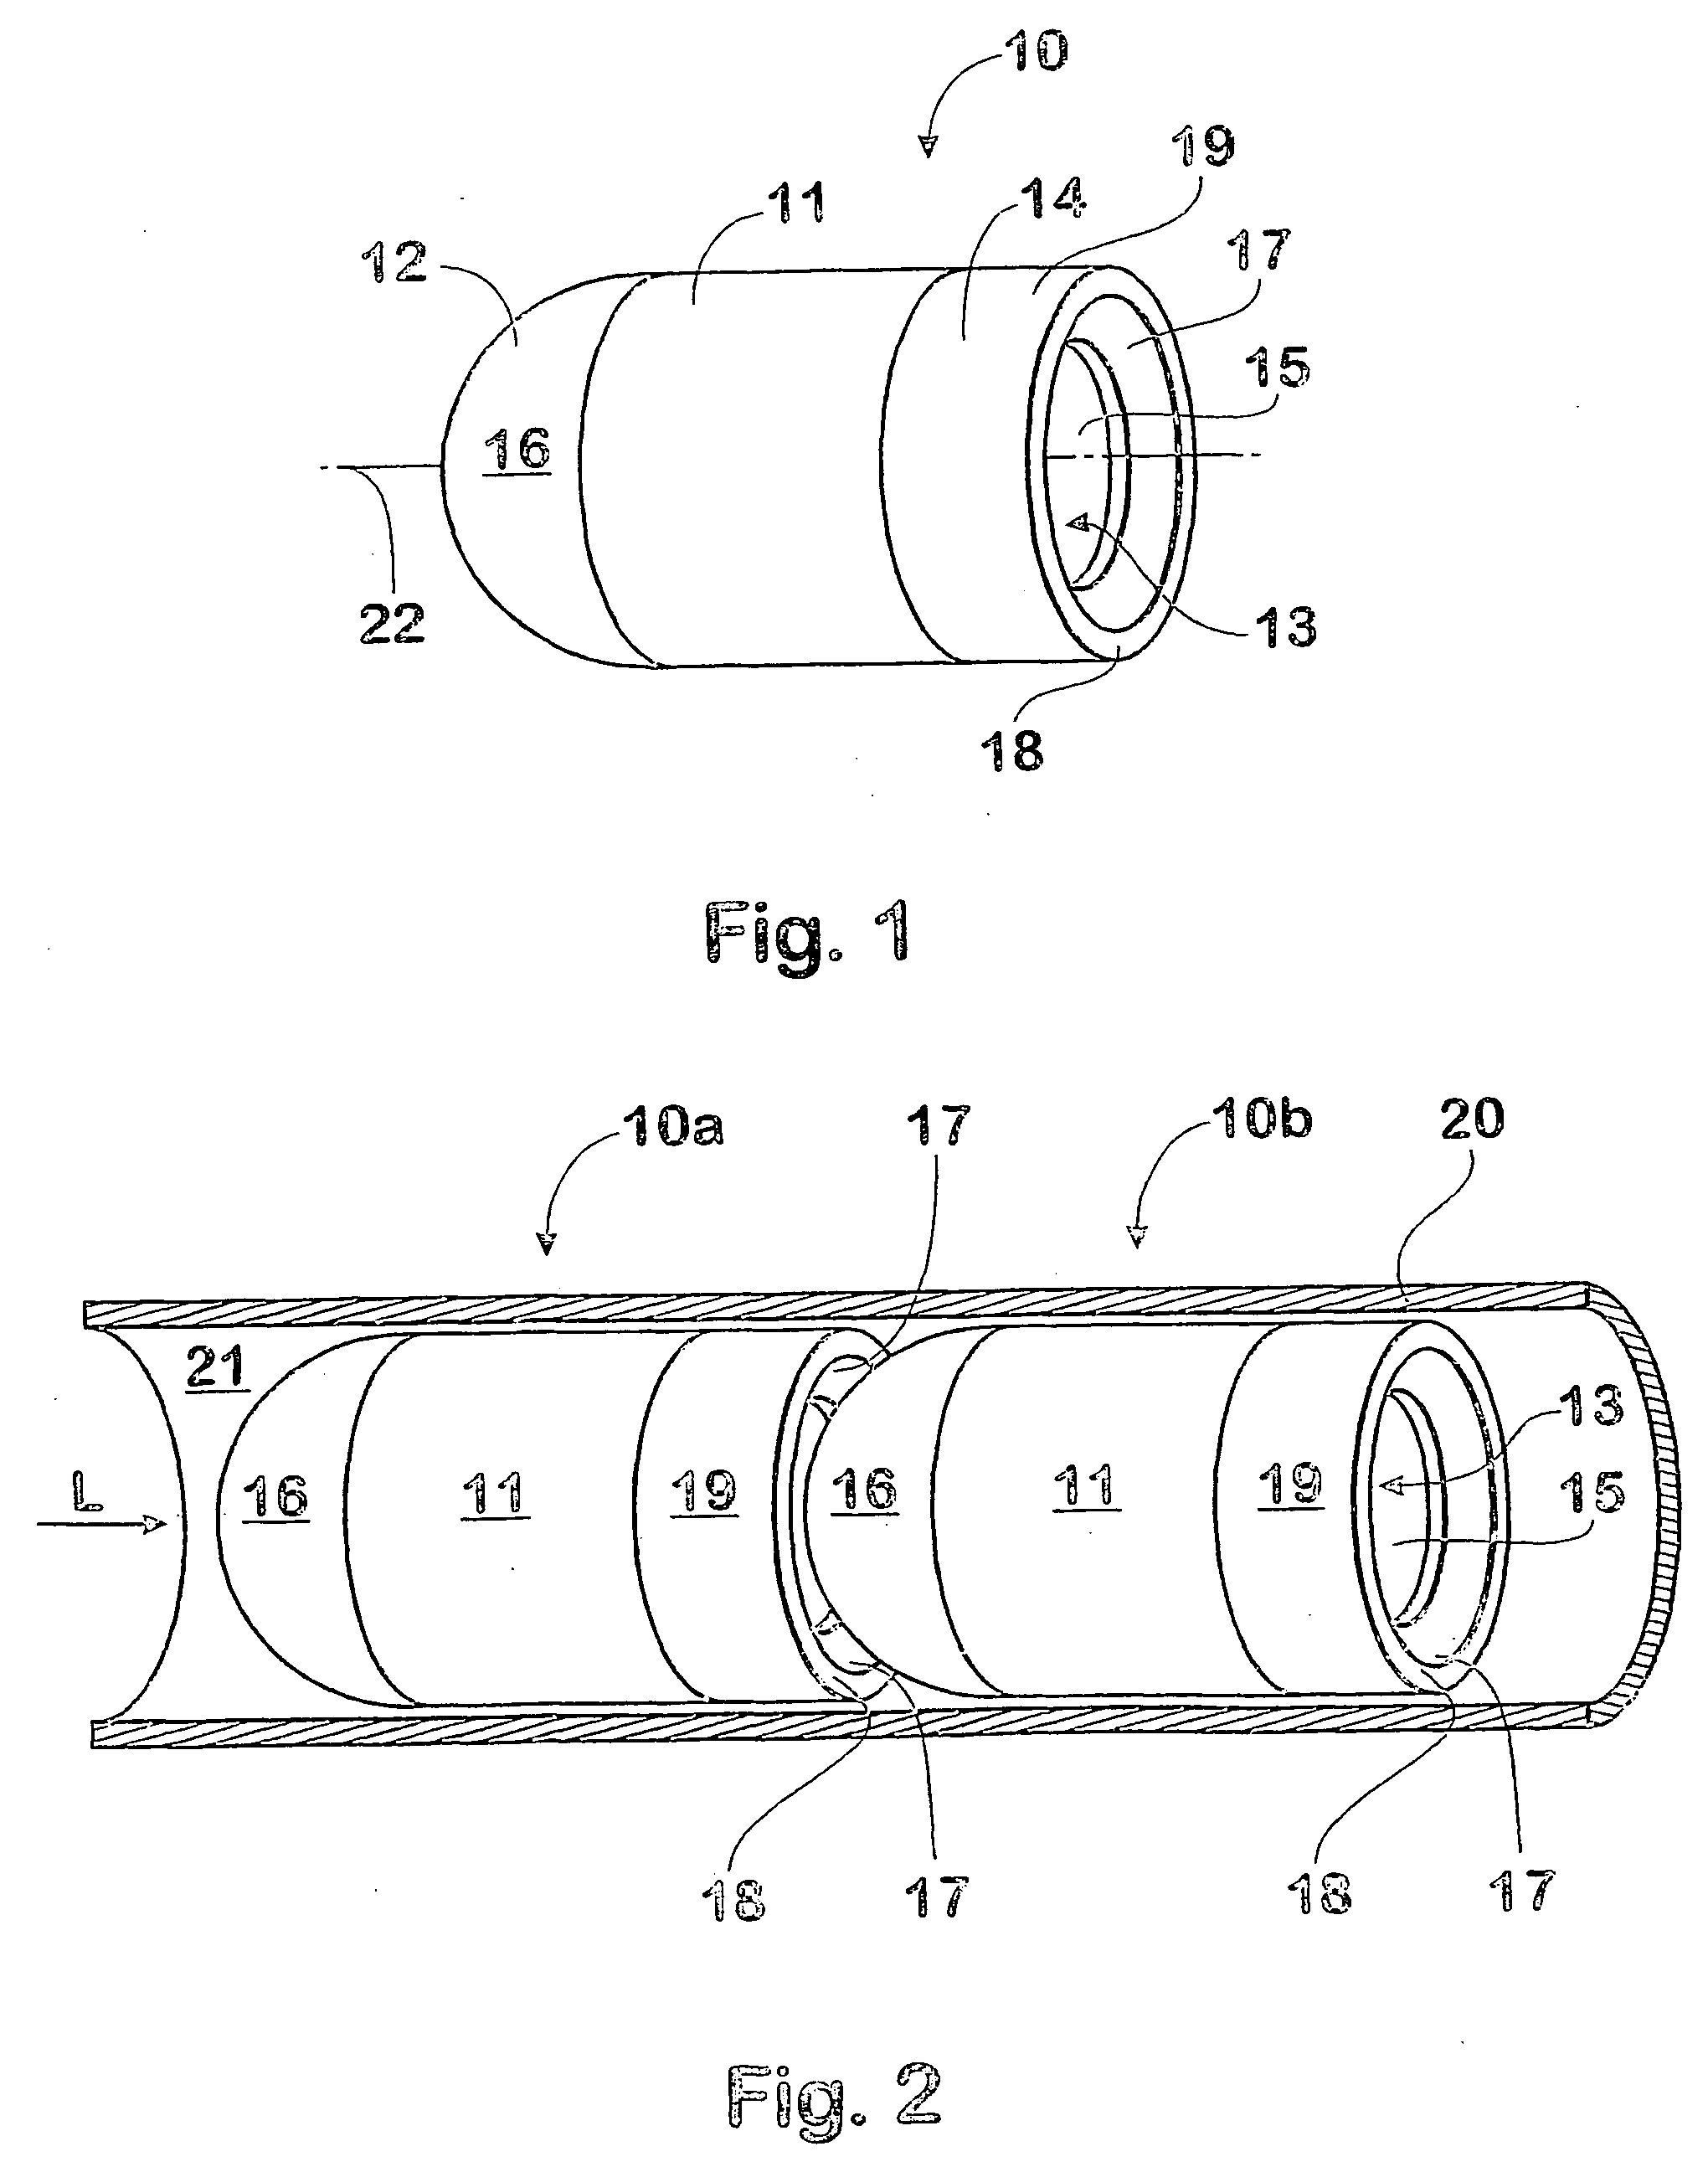 Projectile sealing arrangement